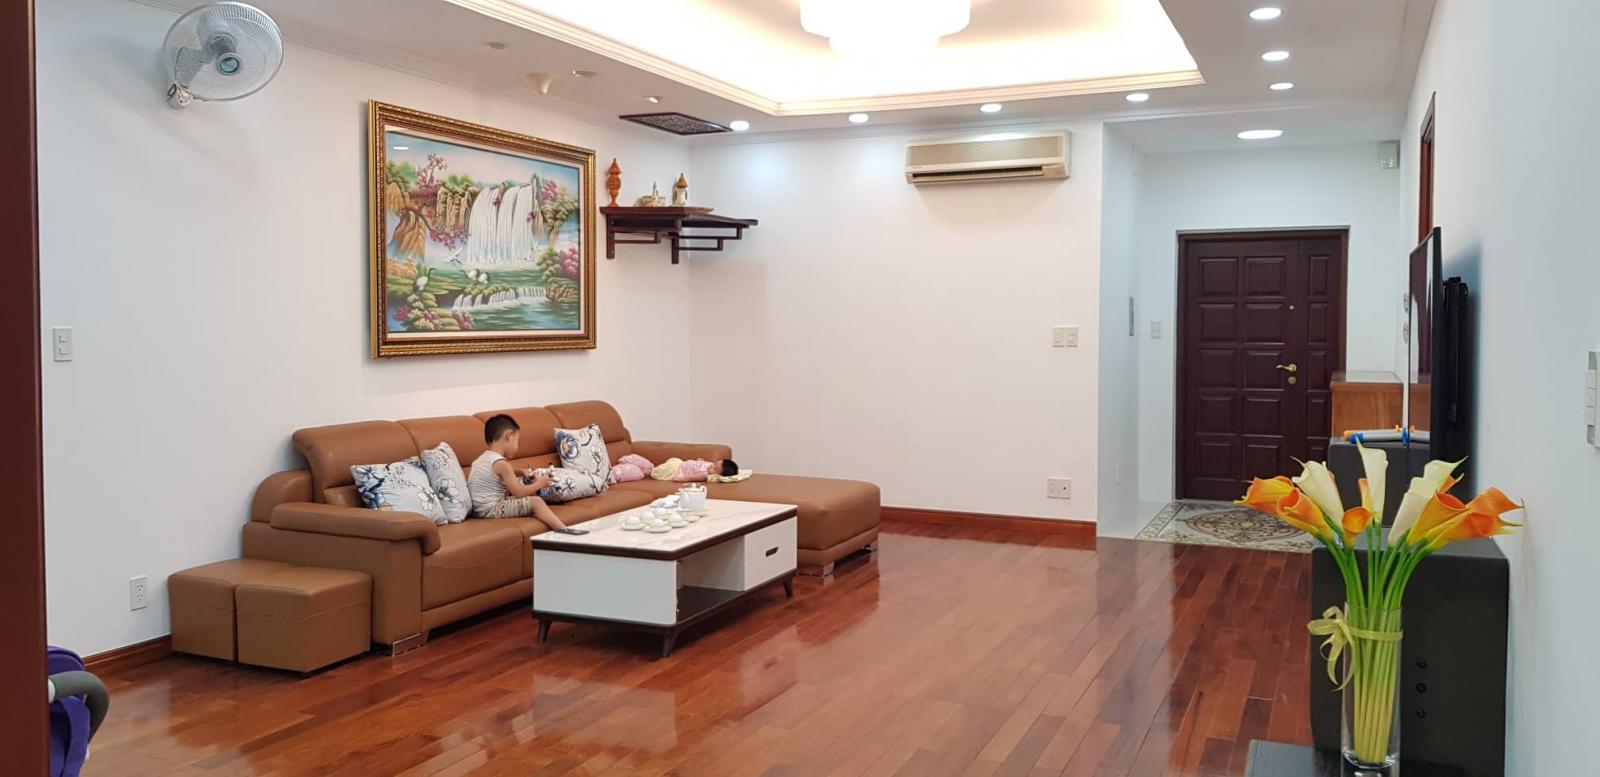 Bán chung cư 91 Nguyễn Chí Thanh. 133m2, căn hộ sửa chữa đẹp 10375896